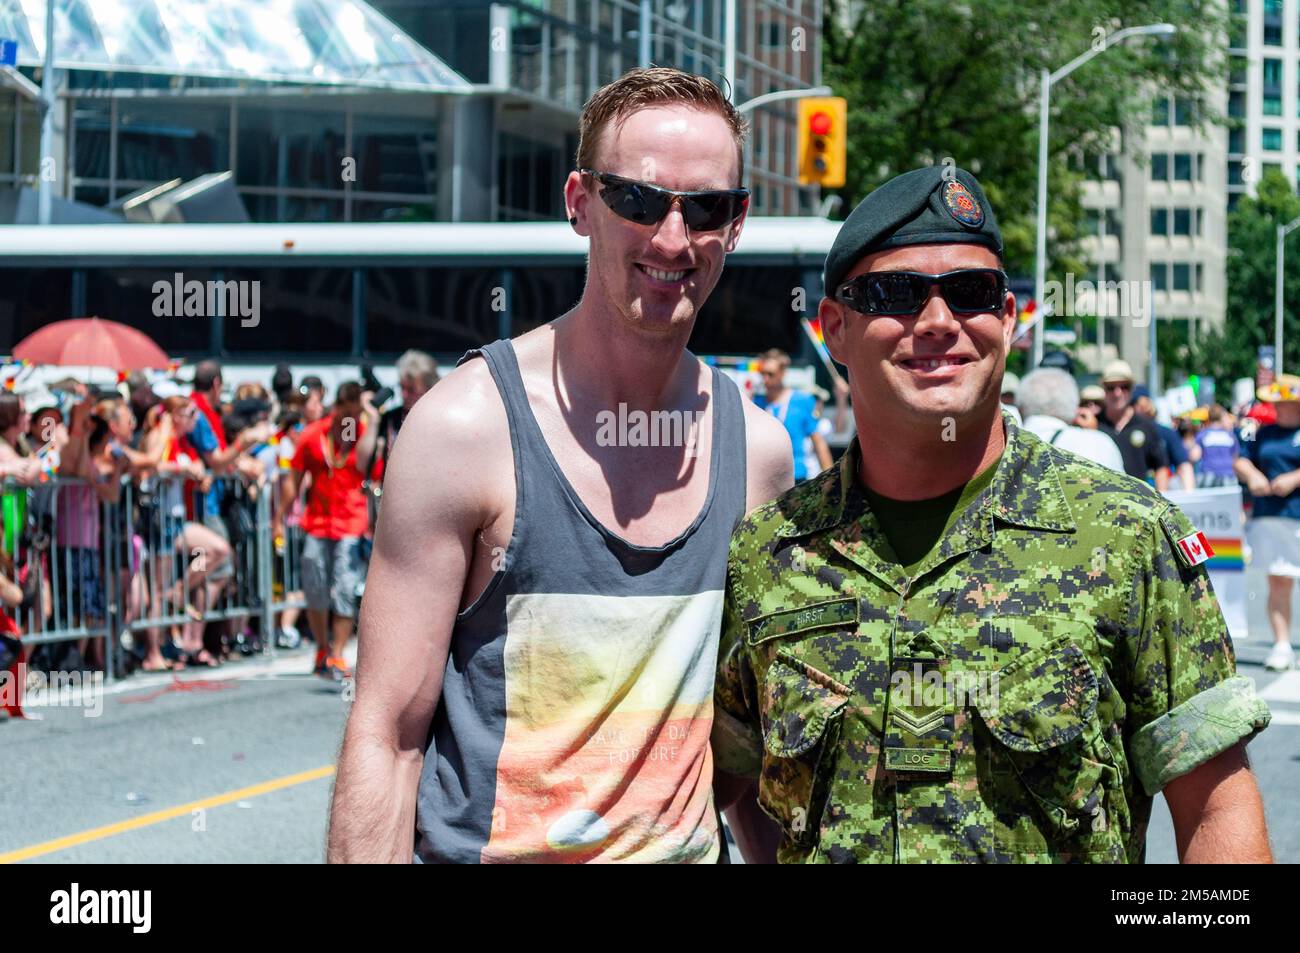 Porträt von zwei Personen. Einer von ihnen trägt eine kanadische Armee-Uniform. Stockfoto